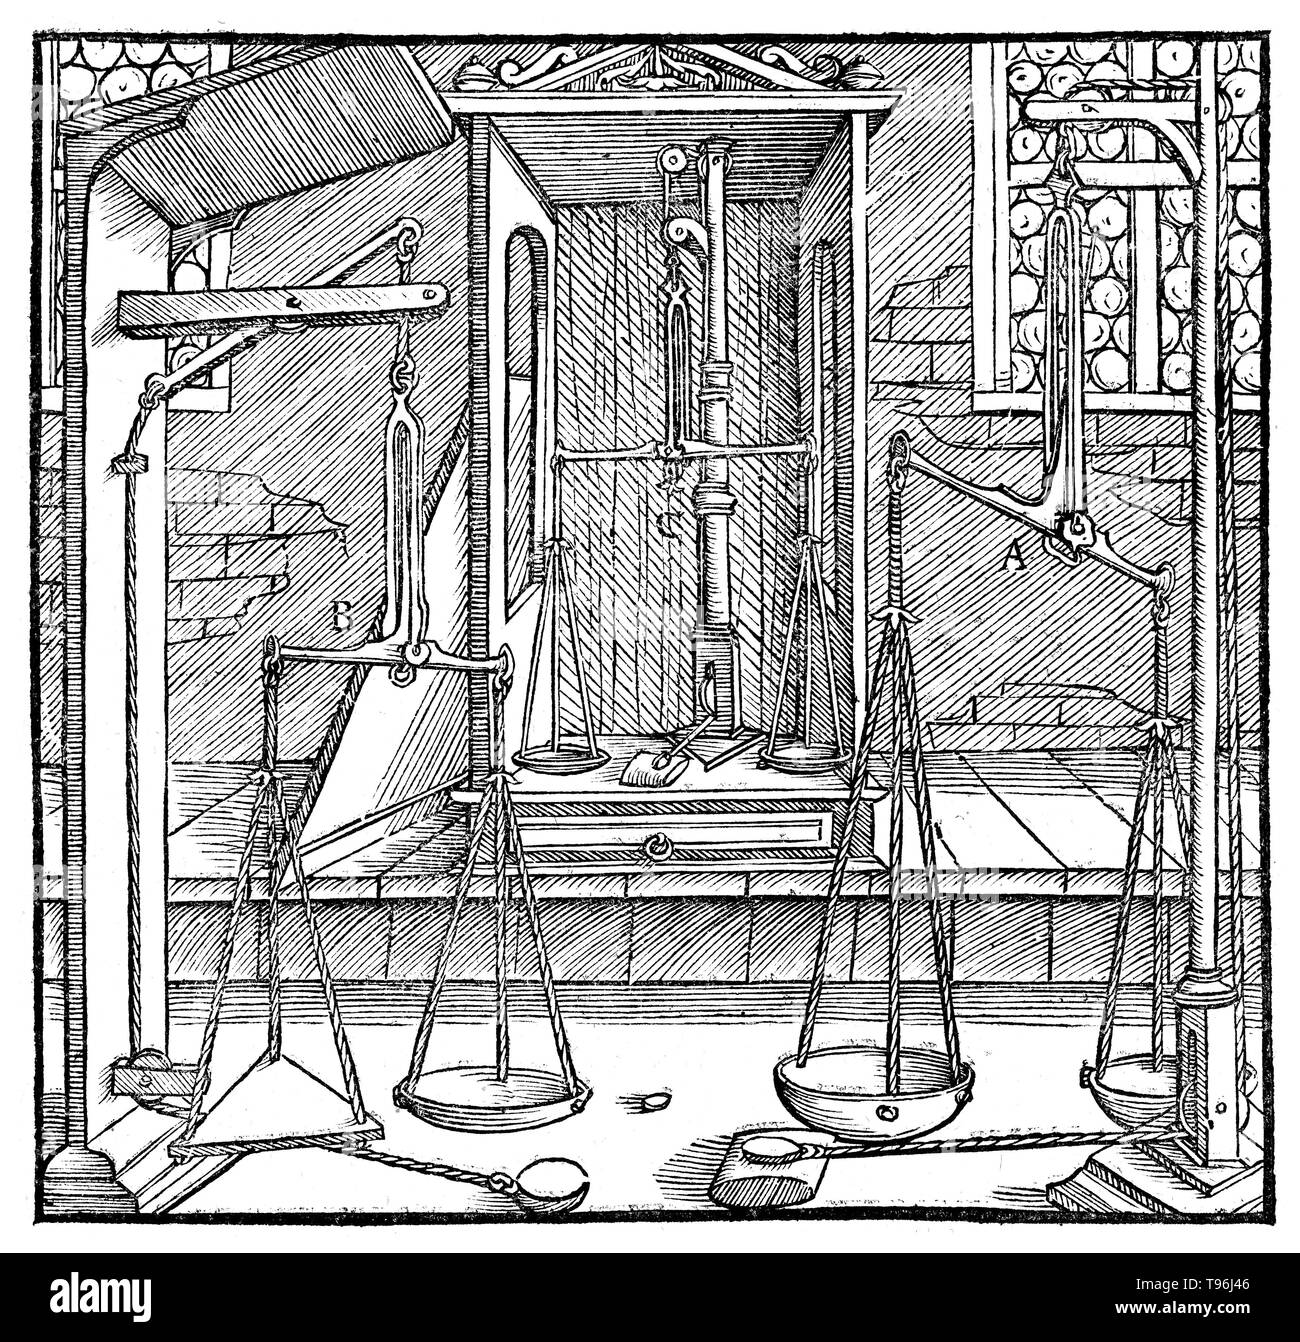 Holzschnitt aus De Re Metallica. Drei Paare von Skalen. Georgius Agricola (März 24, 1494 - November 21, 1555) war ein deutscher Gelehrter und Wissenschaftler,'' bekannt, der Vater der Mineralogie''. 1556 veröffentlichte er sein Buch De Re Metallica, eine Abhandlung über Bergbau und Metallgewinnung, mit Holzschnitten illustriert Prozesse Erze aus dem Boden und Metall aus dem Erz zu extrahieren, und die vielen Verwendungen von Wassermühlen im Bergbau. Stockfoto